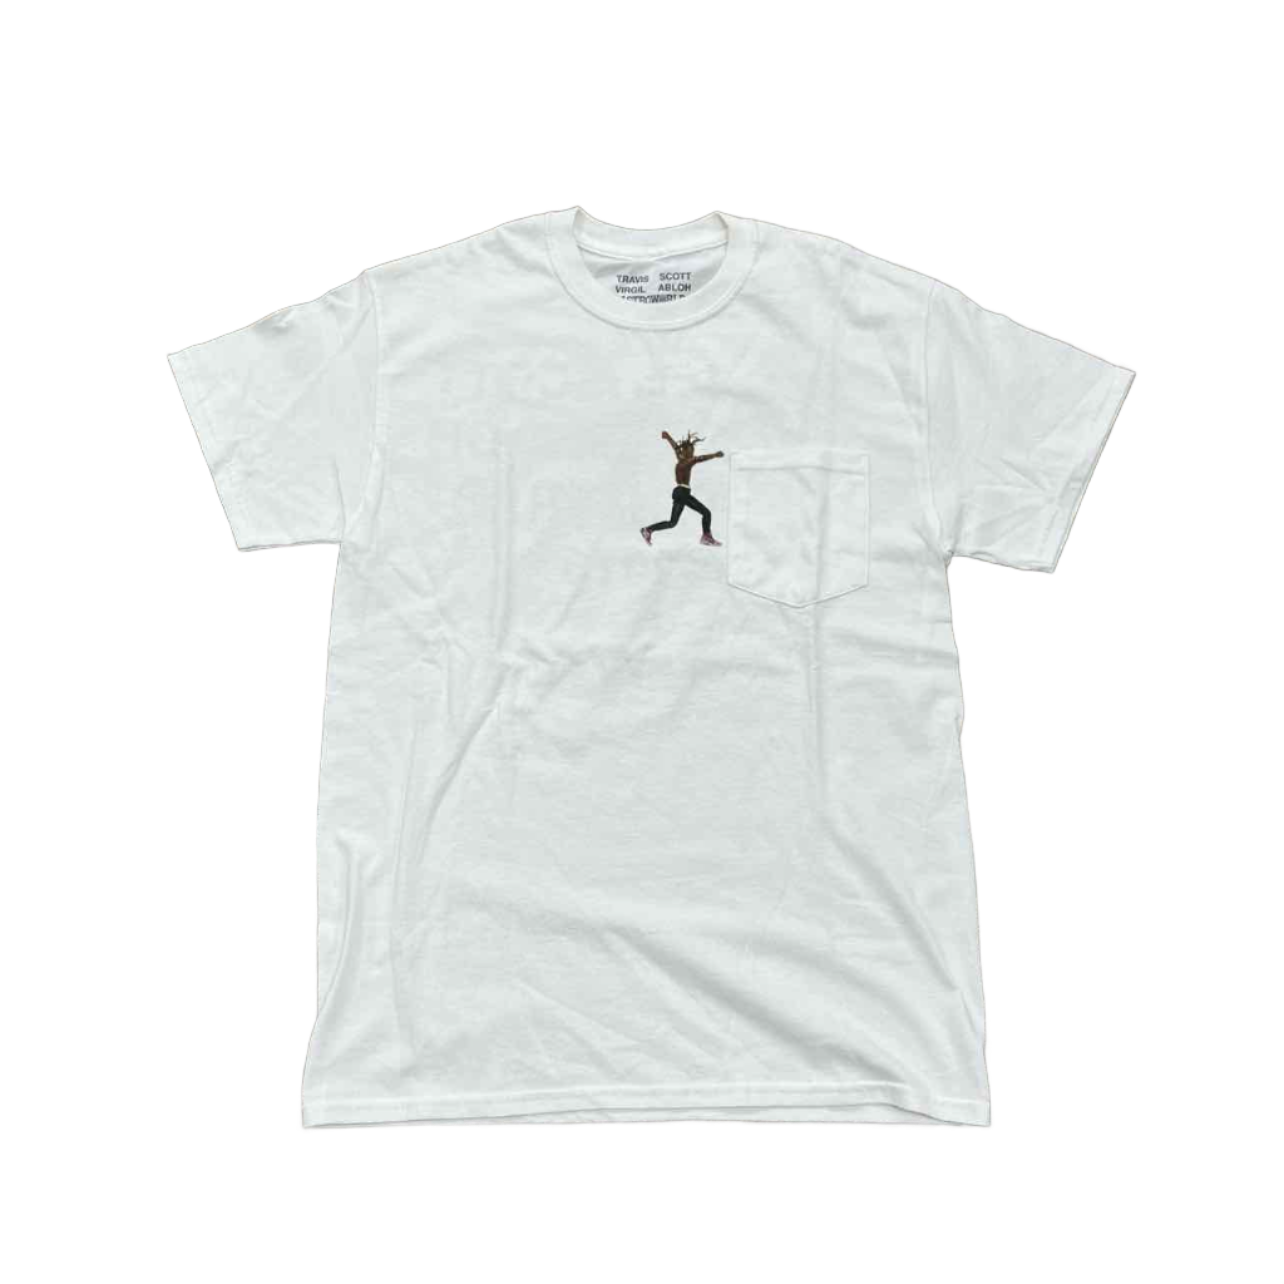 Travis Scott T-Shirt &quot;VIRGIL ABLOH&quot; White New (Cond) Size M